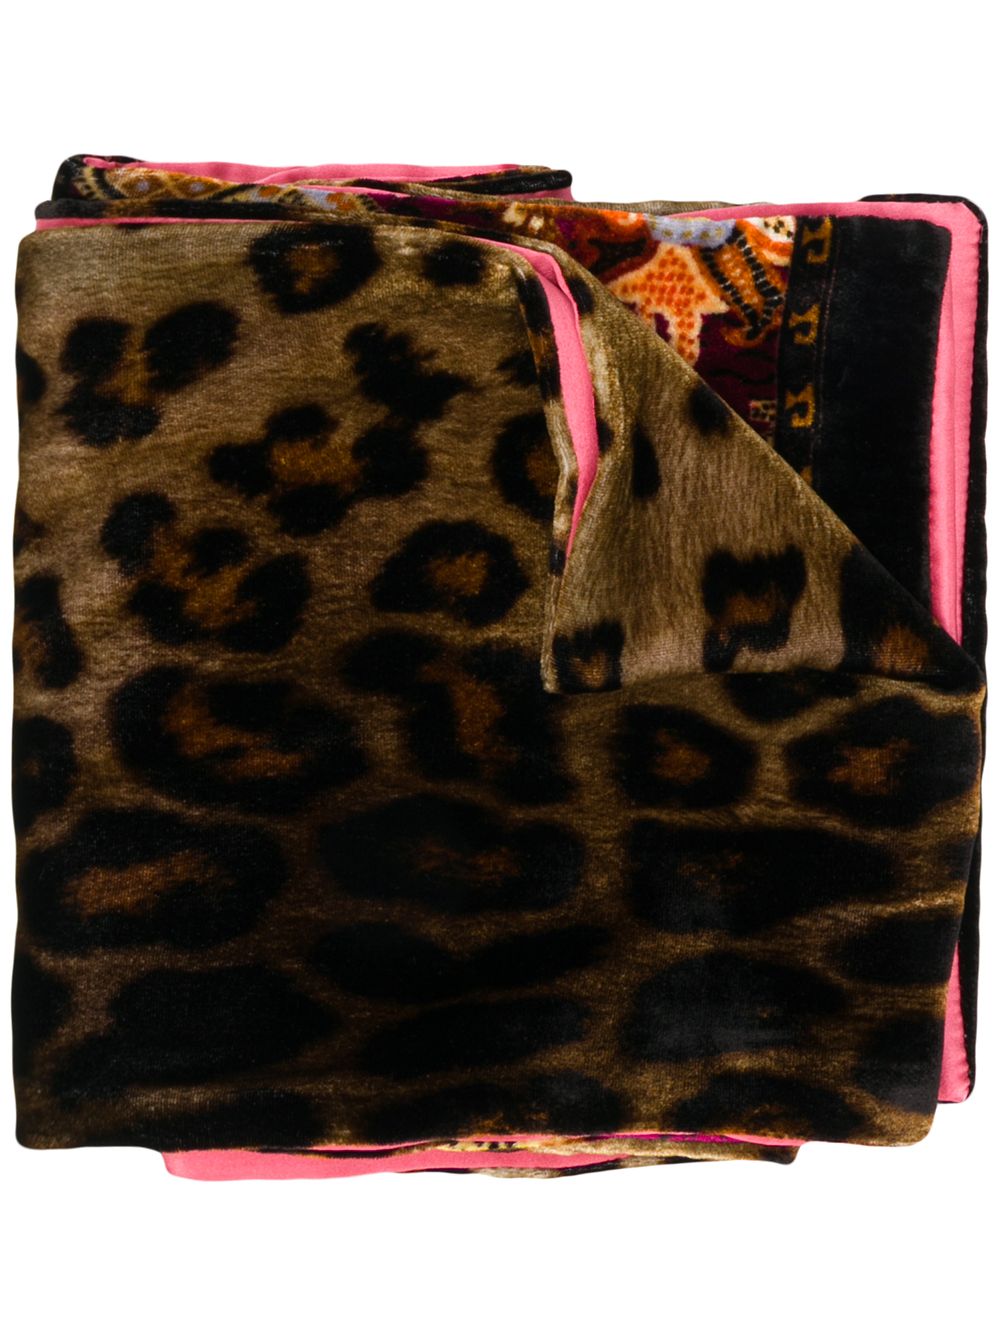 фото Etro шарф с леопардовым принтом